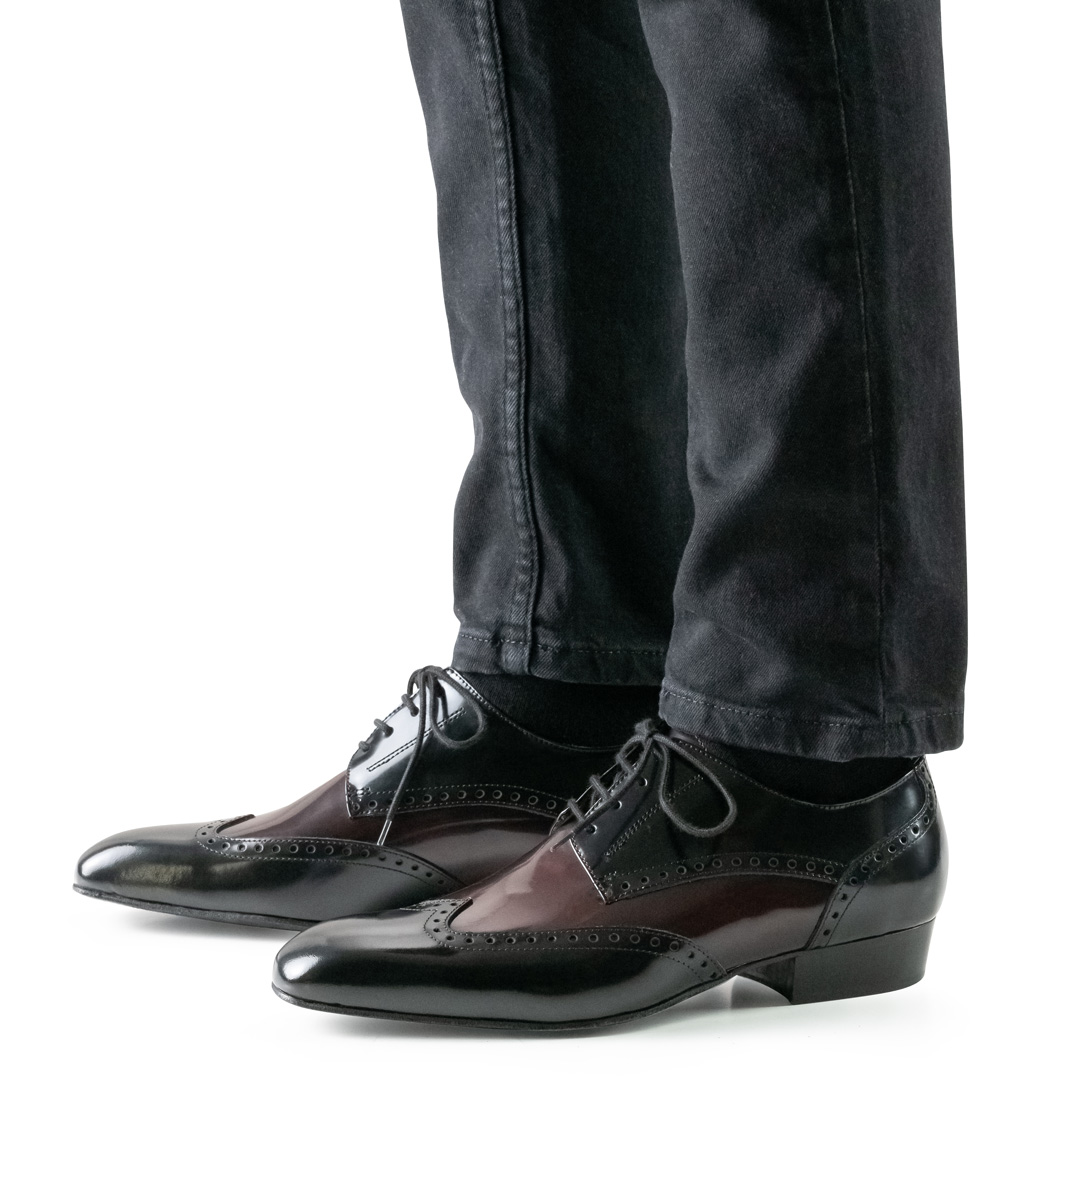 2.5 cm high Nueva Epoca men's dance shoe in combination with black jeans